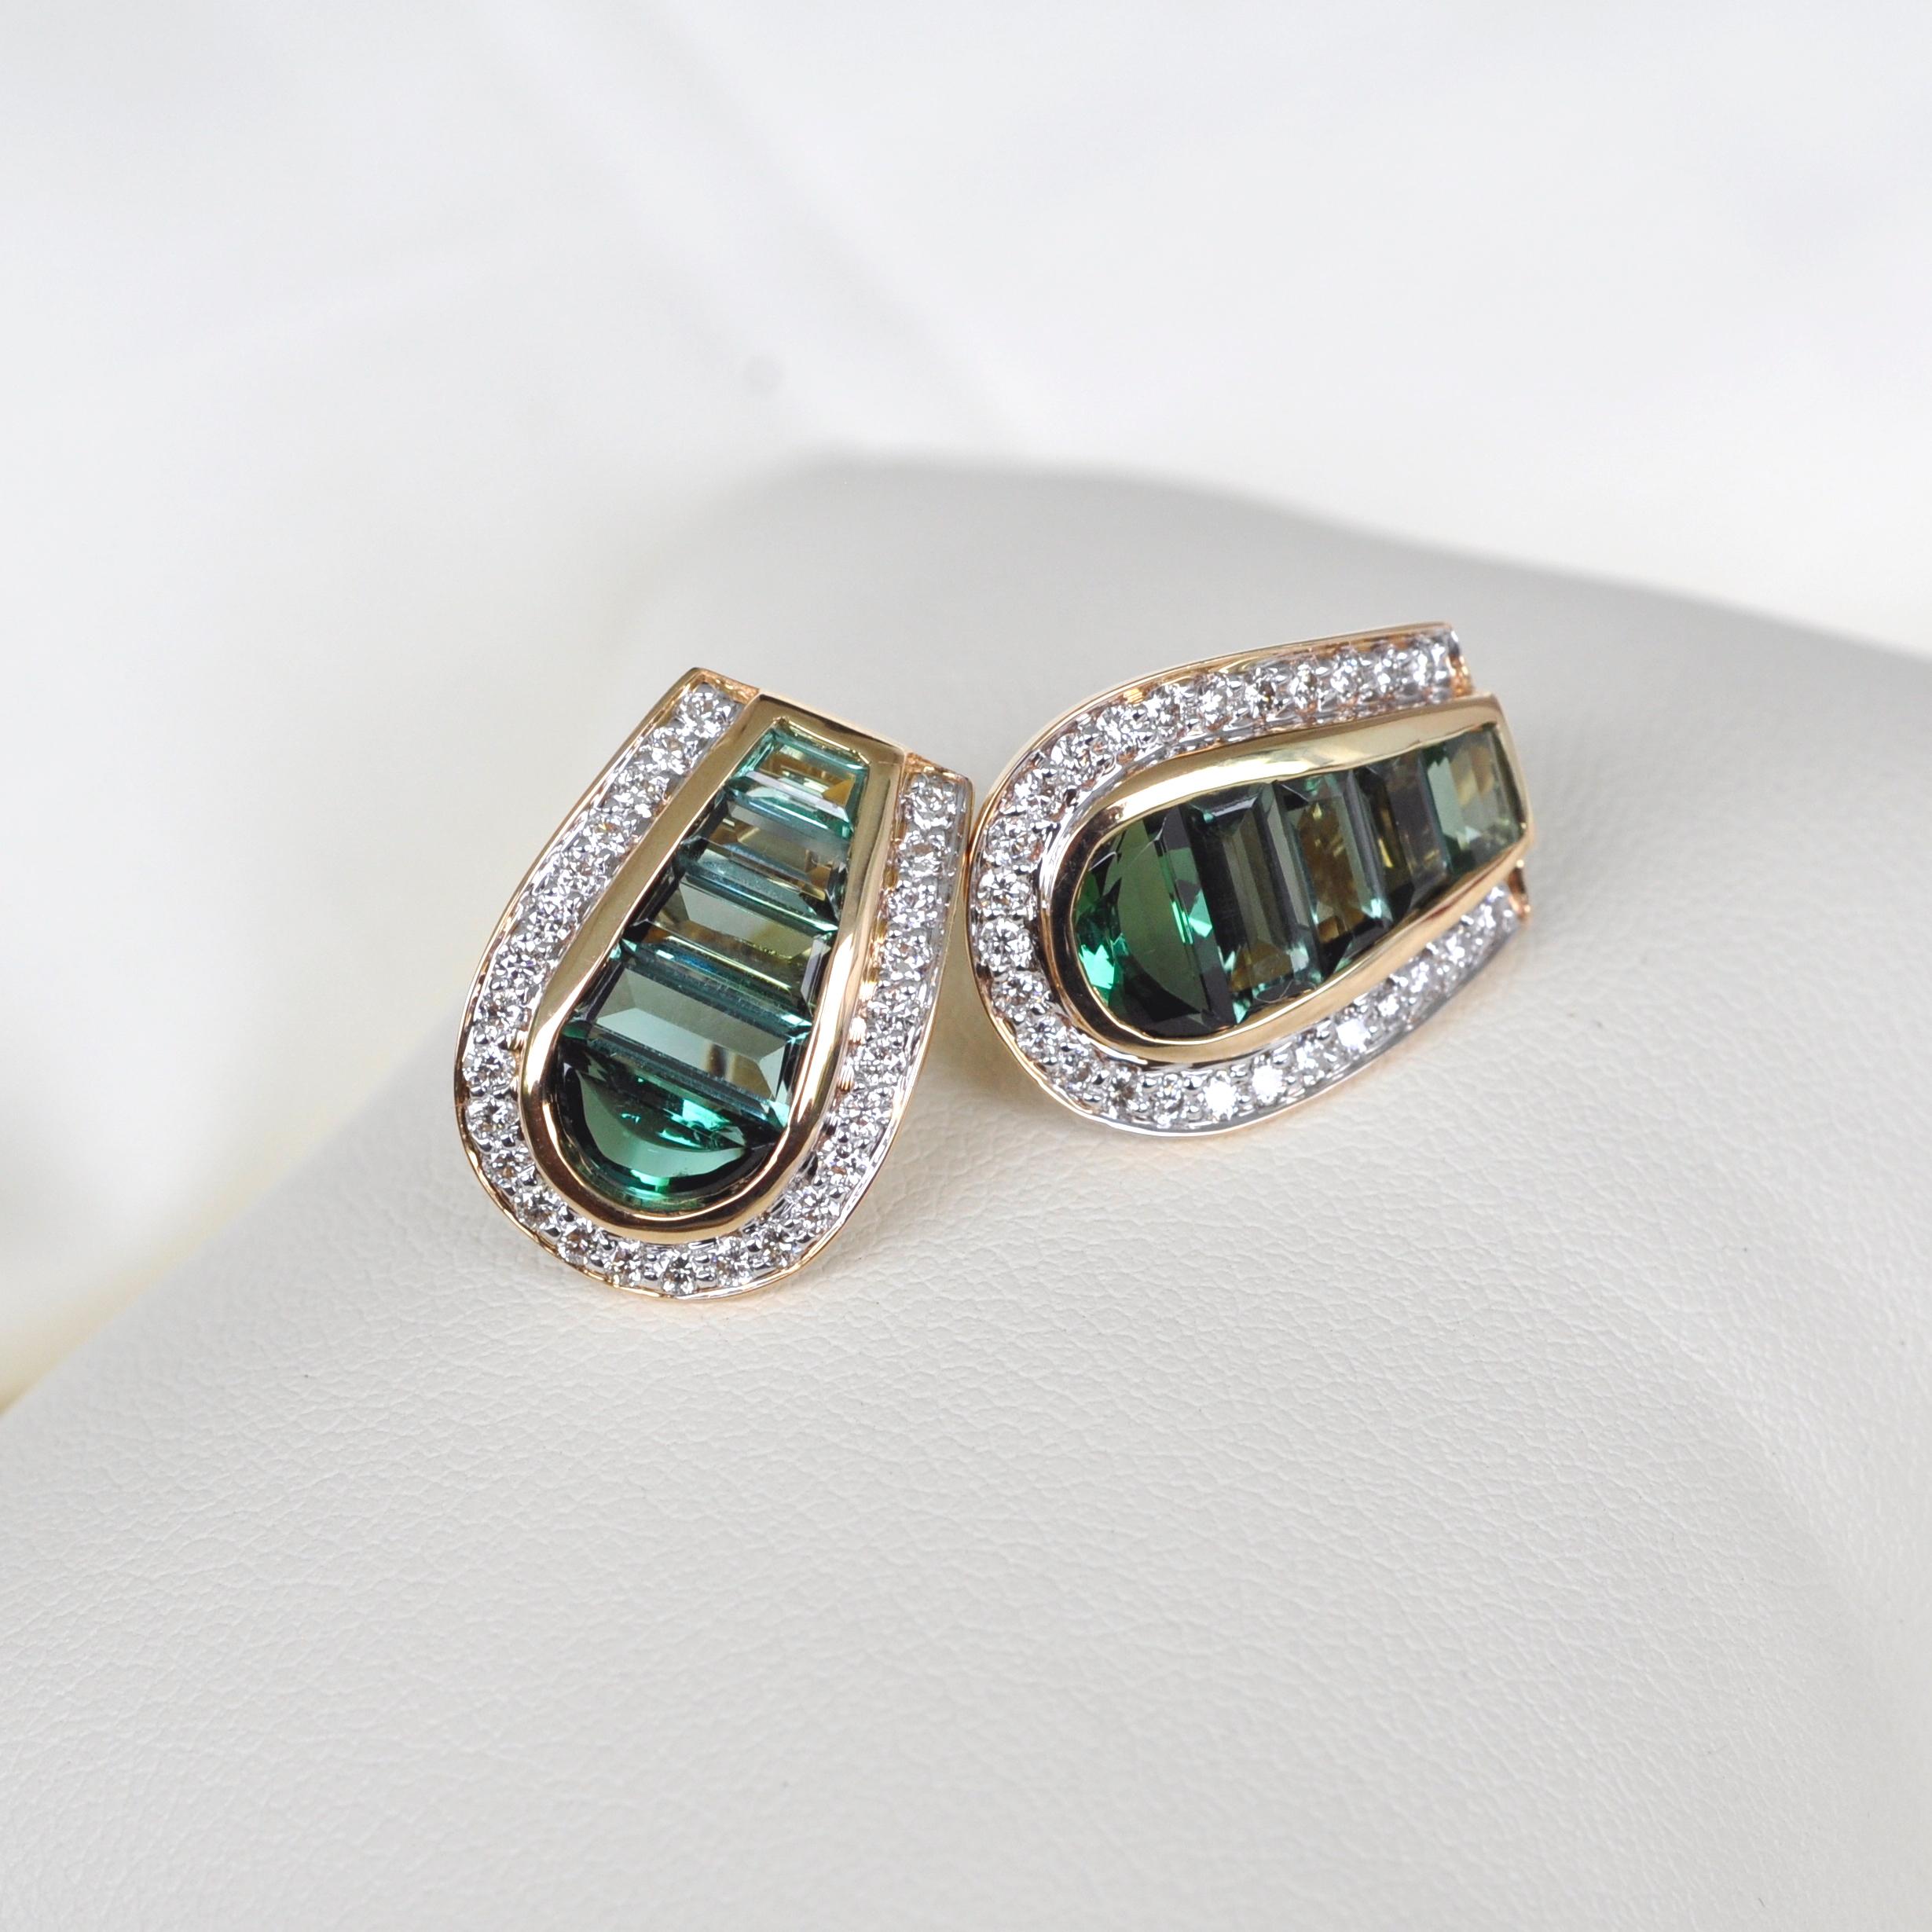 18 Karat Gold Art Deco Style Channel Set Green Tourmaline Diamond Studs Earrings 6